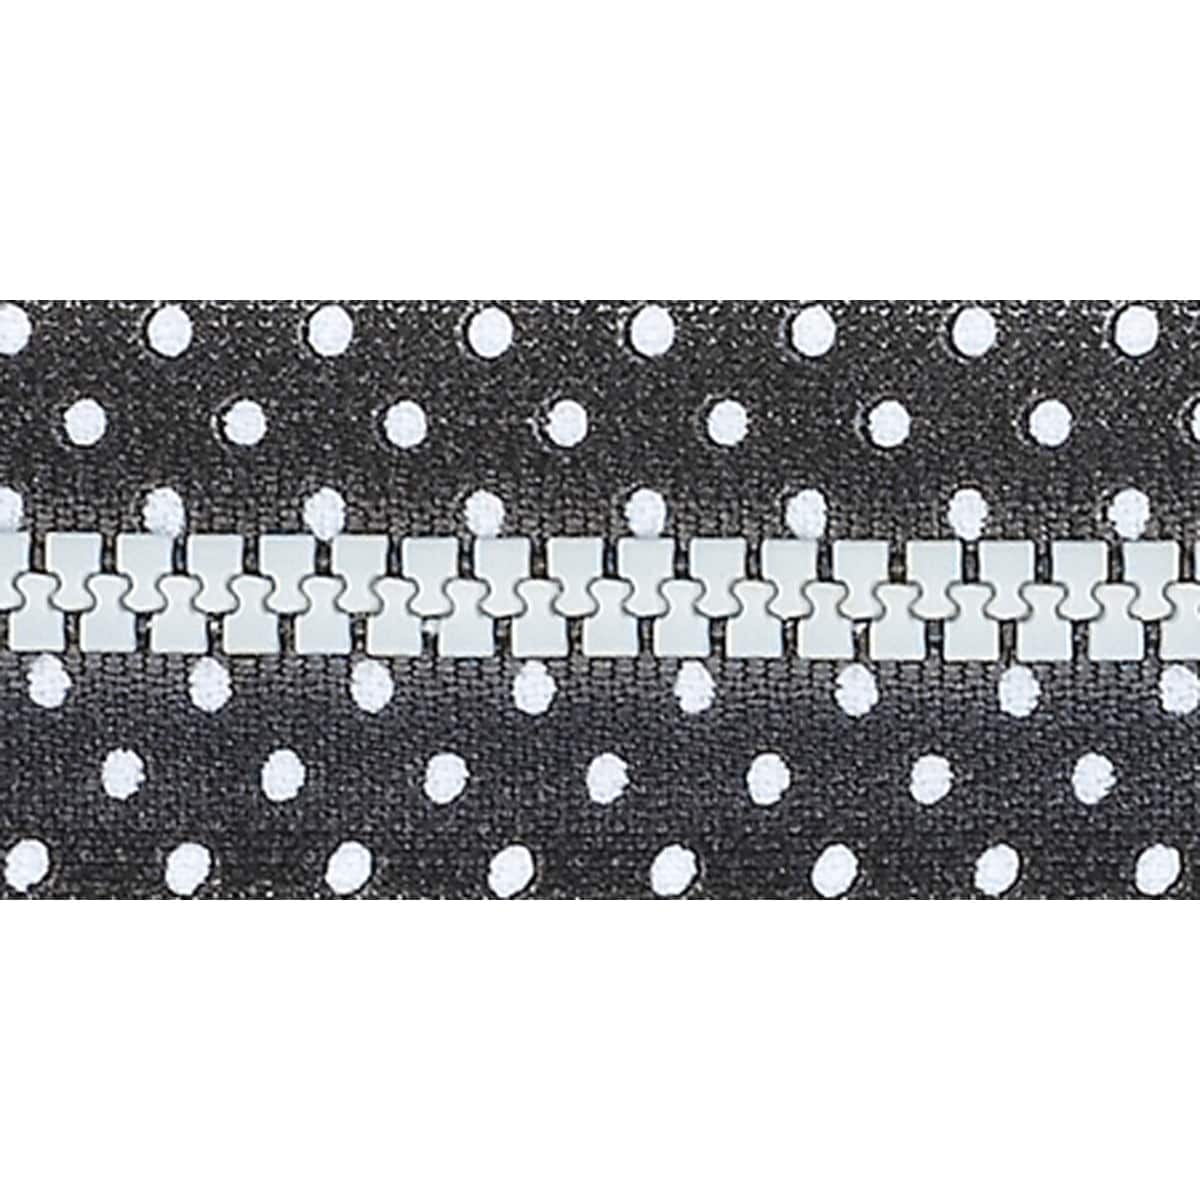 Fashion Black & White Separating Zipper 24 Black W/White Dots Today